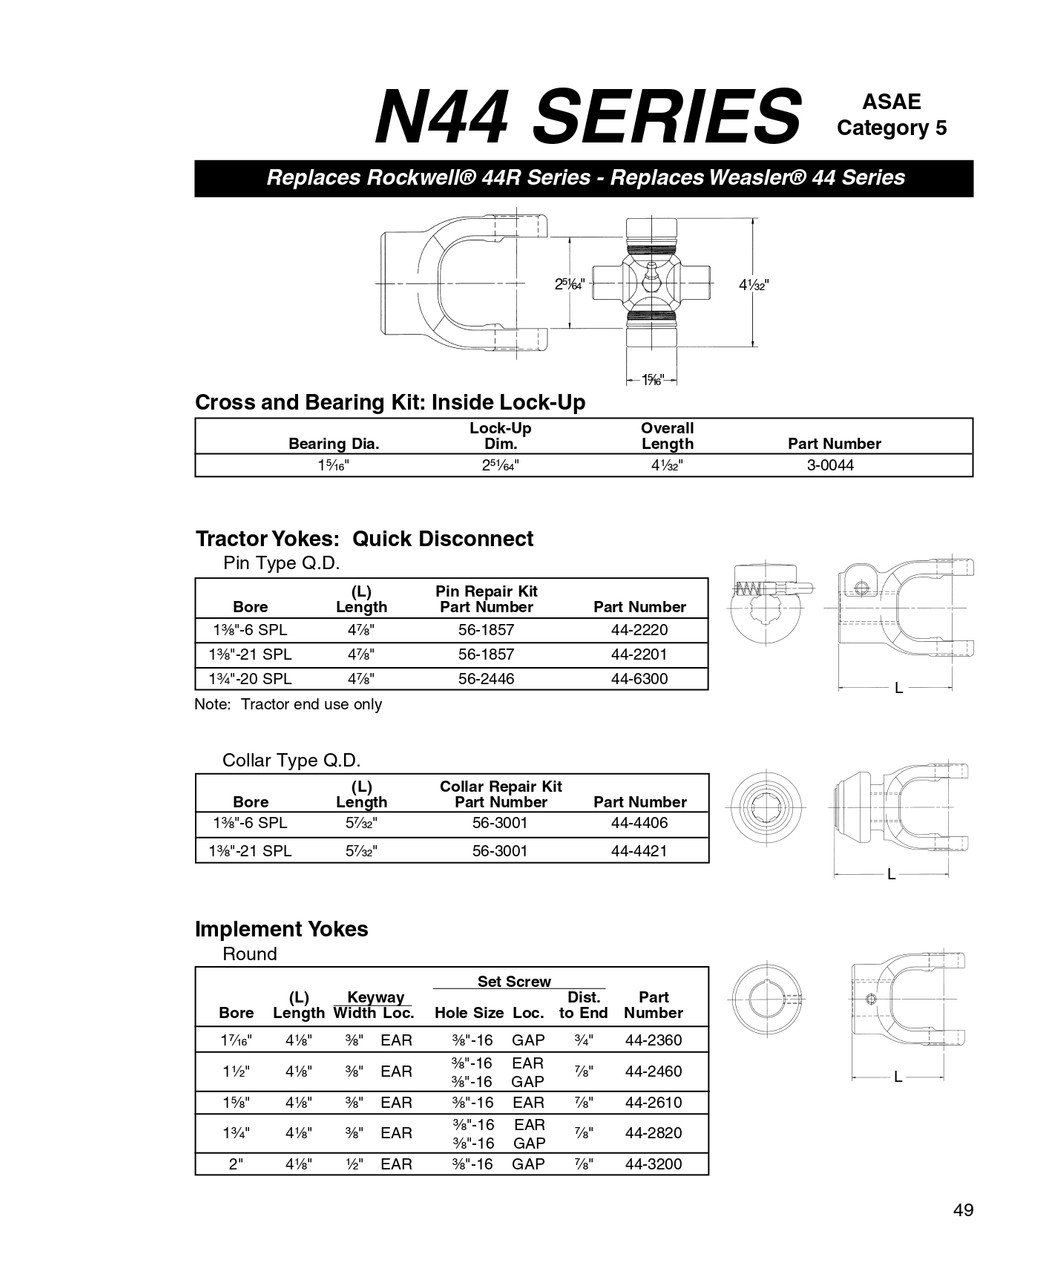 1-5/8" Round - Neapco® N44 Series End Yoke w/Single Keyway  44-2610